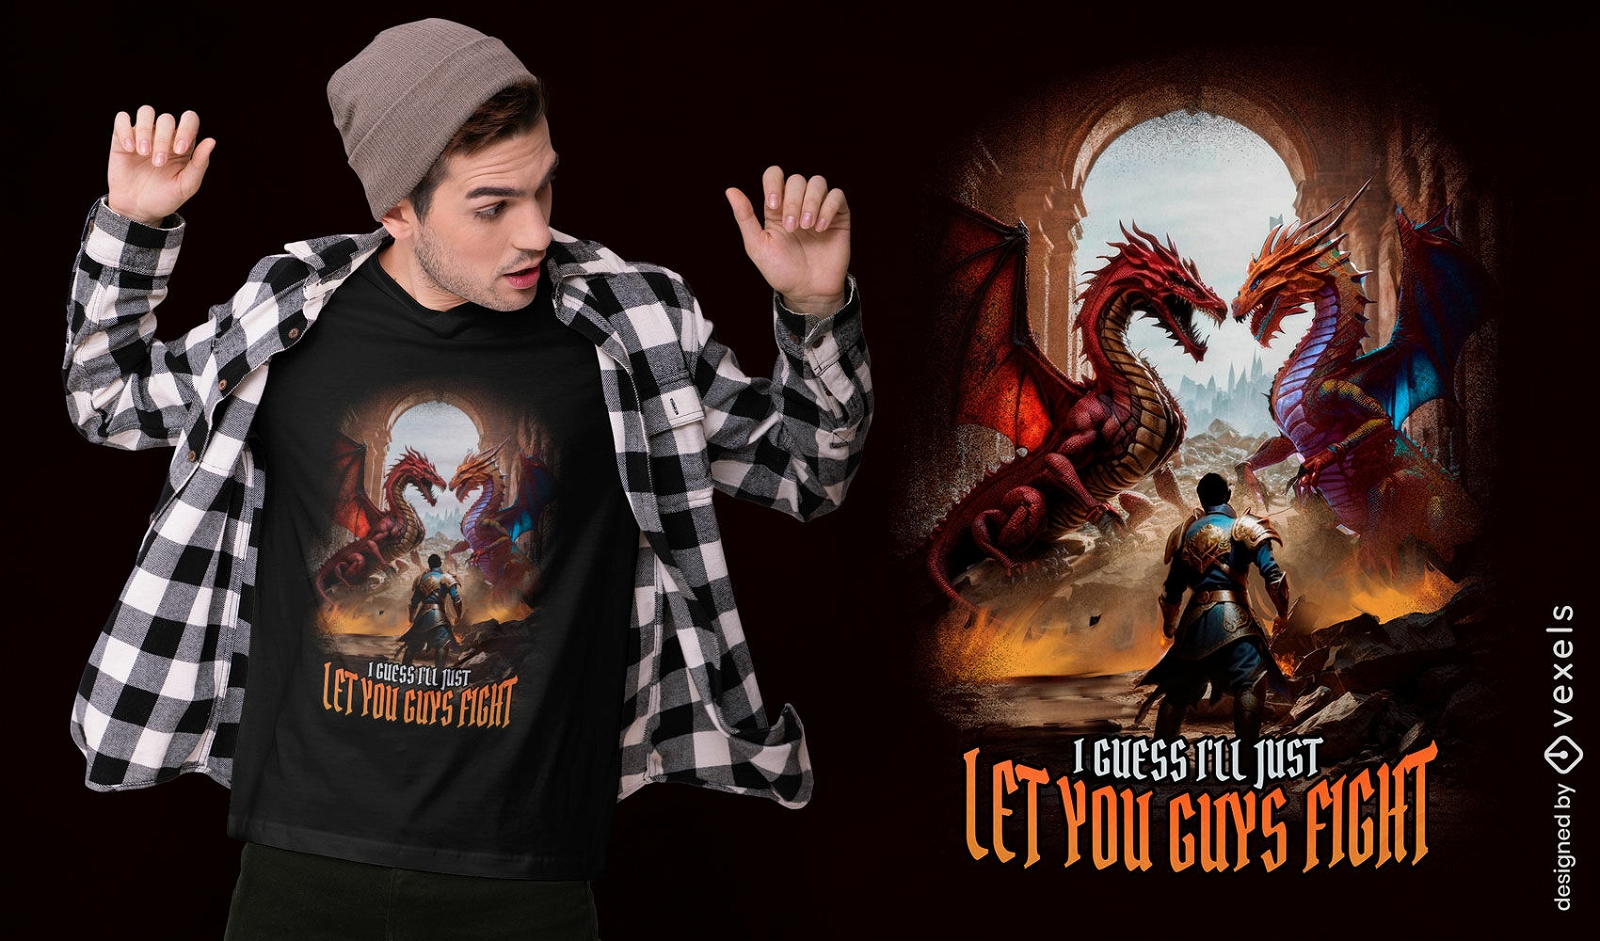 Epic dragon battle t-shirt design